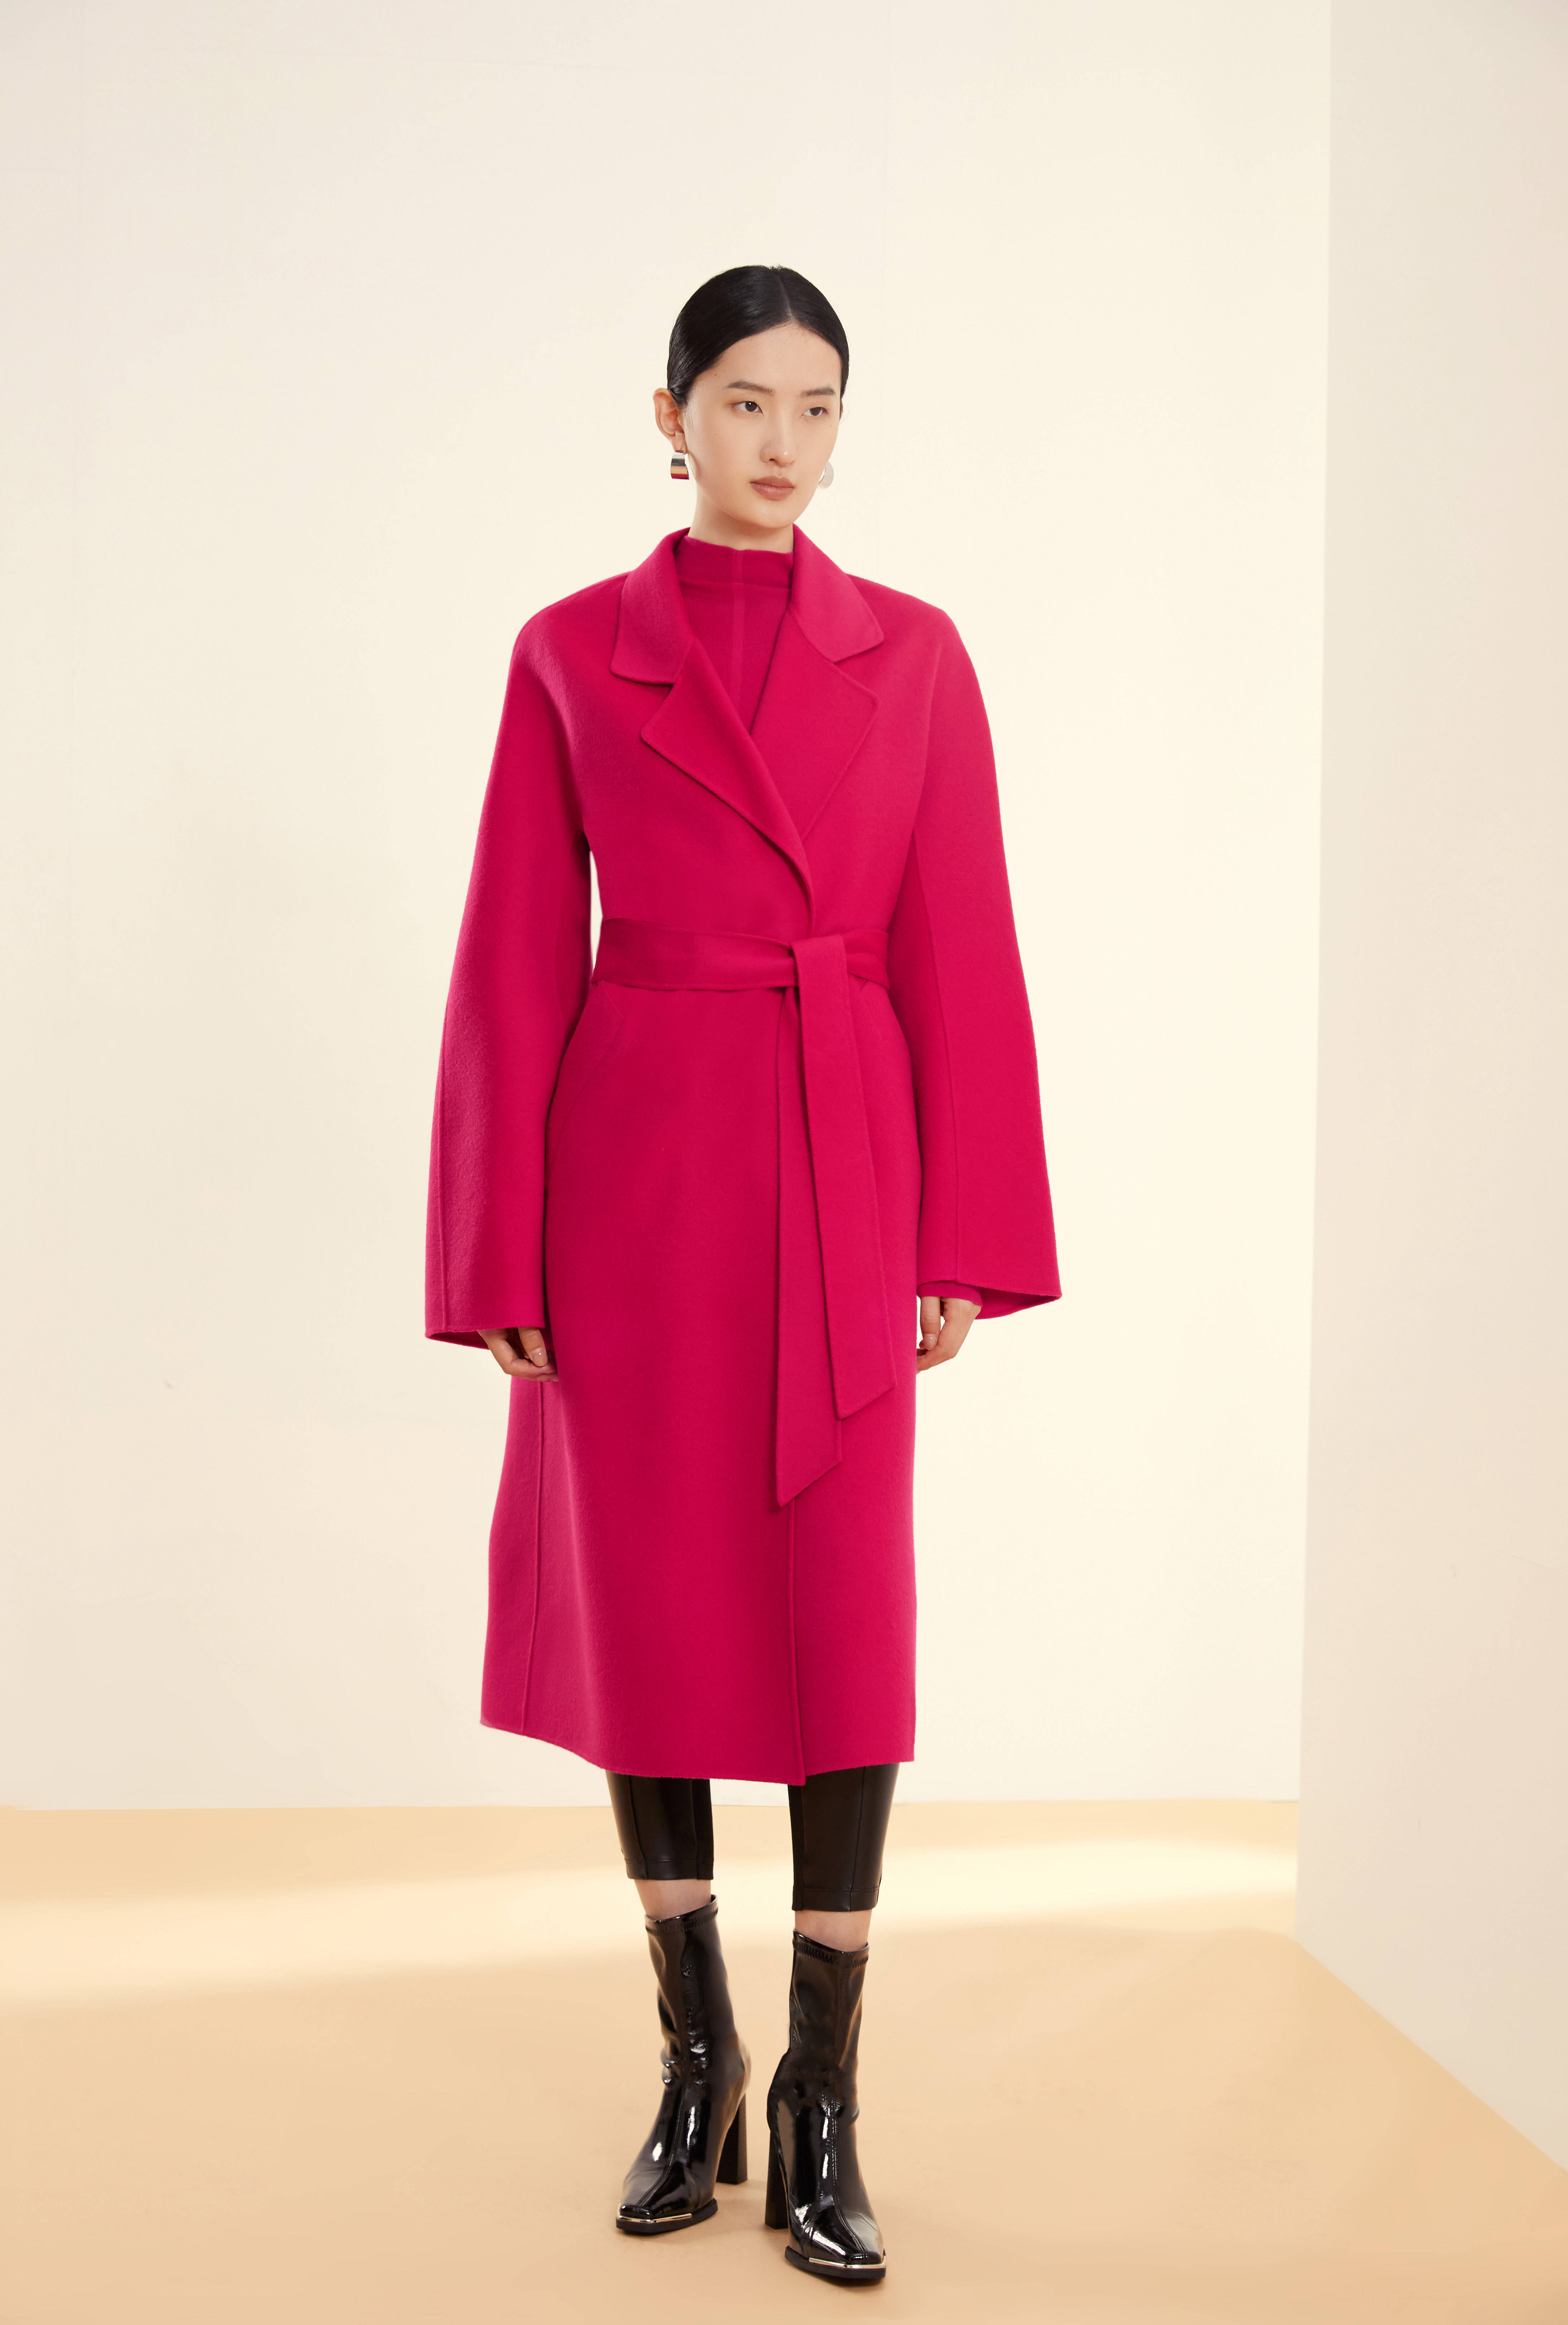 2021/22秋冬女装流行色分析-服装设计-服装设计教程-CFW服装设计